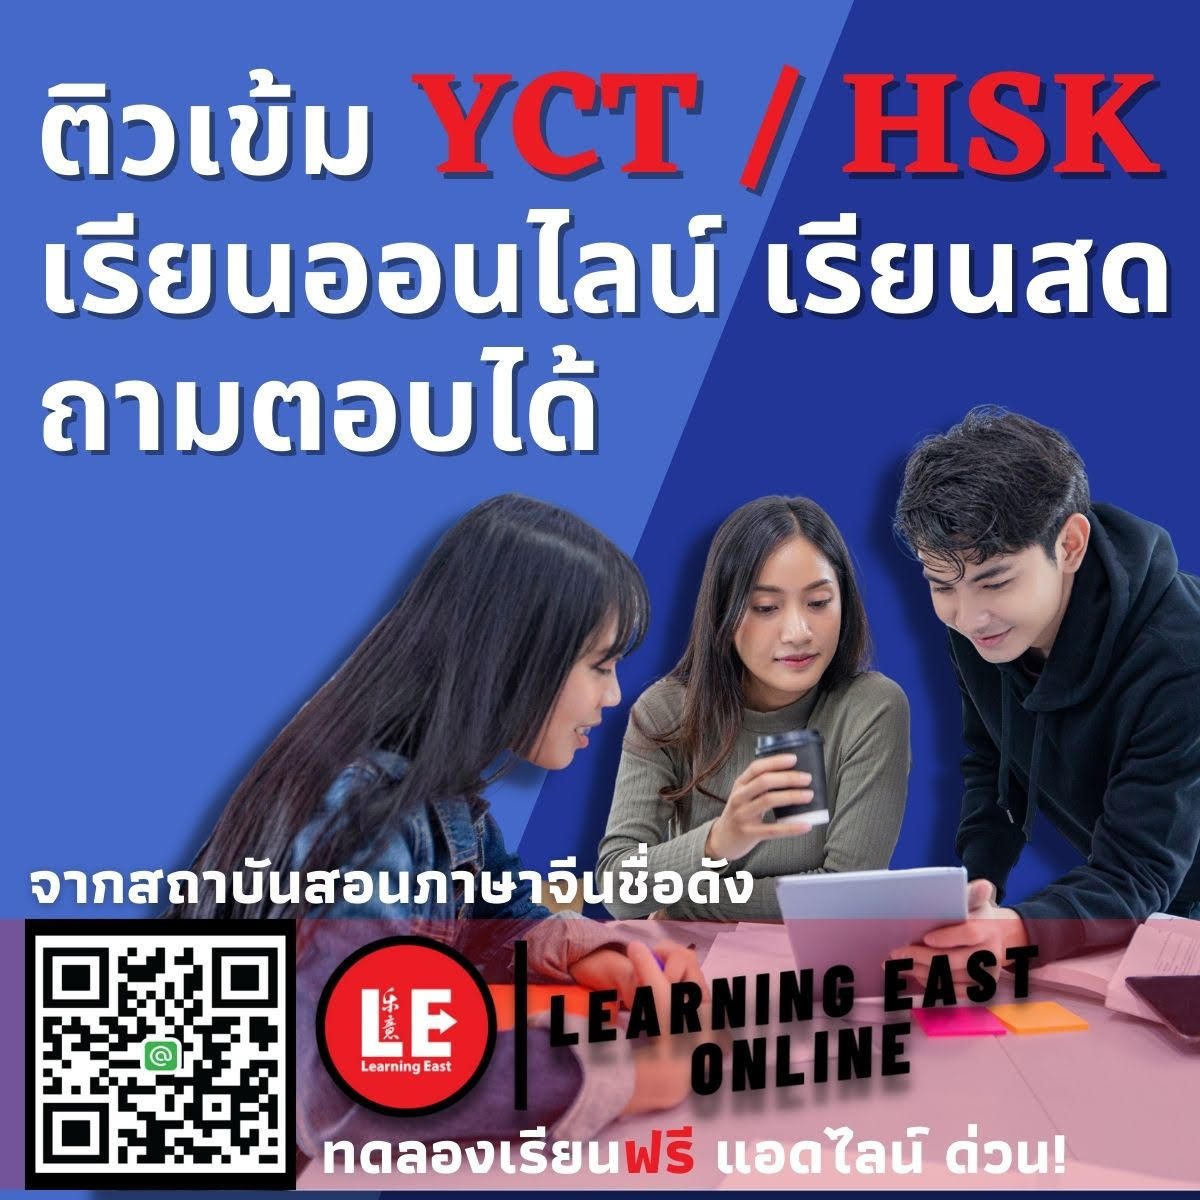 ติวสอบ YCT HSK ออนไลน์กับสถาบันภาษาจีนเลิร์นนิ่งอีสท์